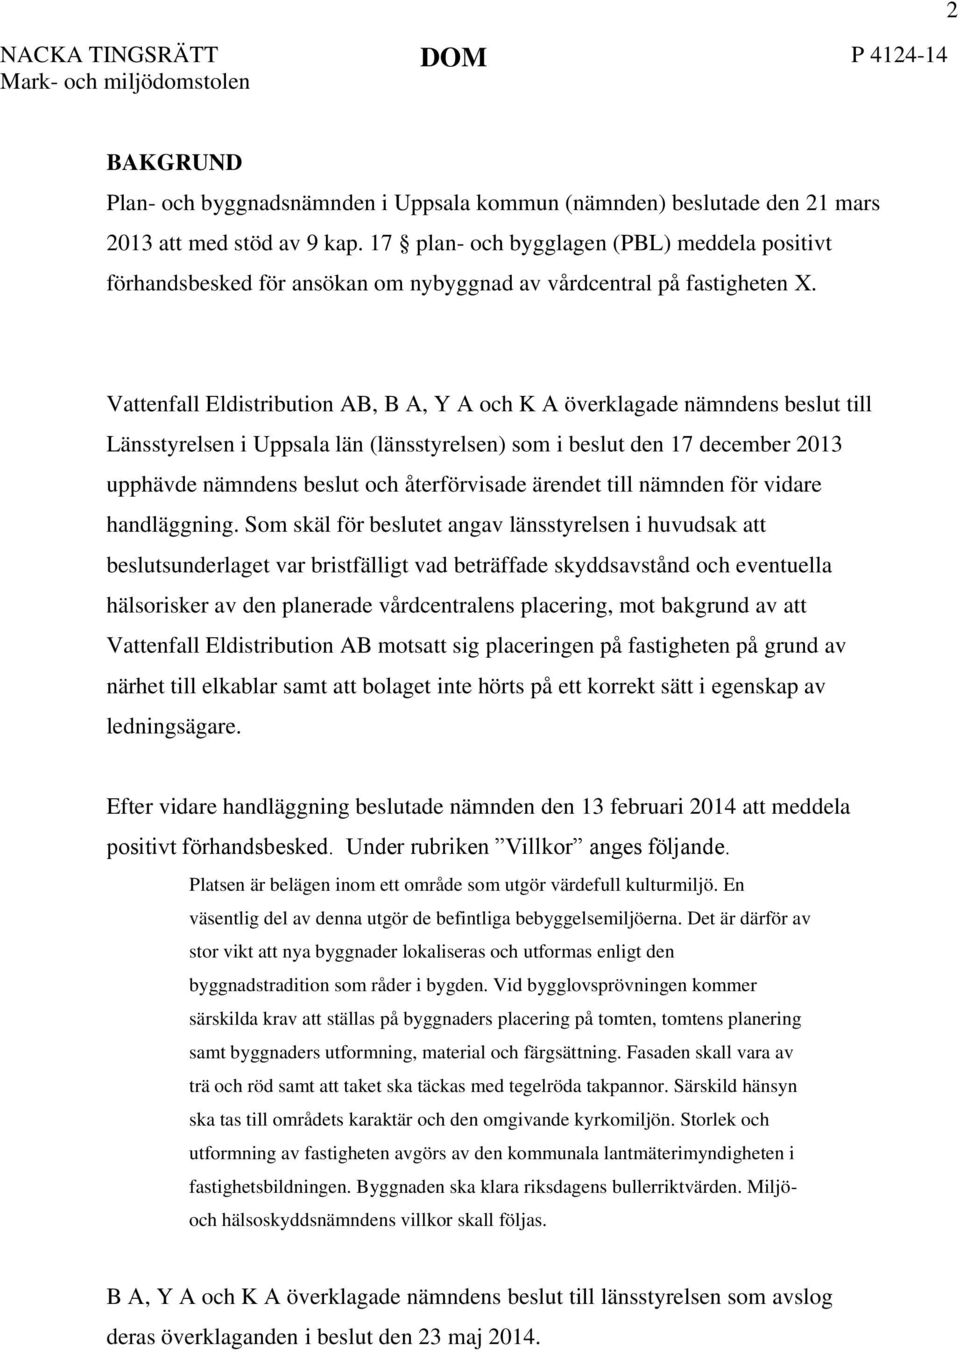 Vattenfall Eldistribution AB, B A, Y A och K A överklagade nämndens beslut till Länsstyrelsen i Uppsala län (länsstyrelsen) som i beslut den 17 december 2013 upphävde nämndens beslut och